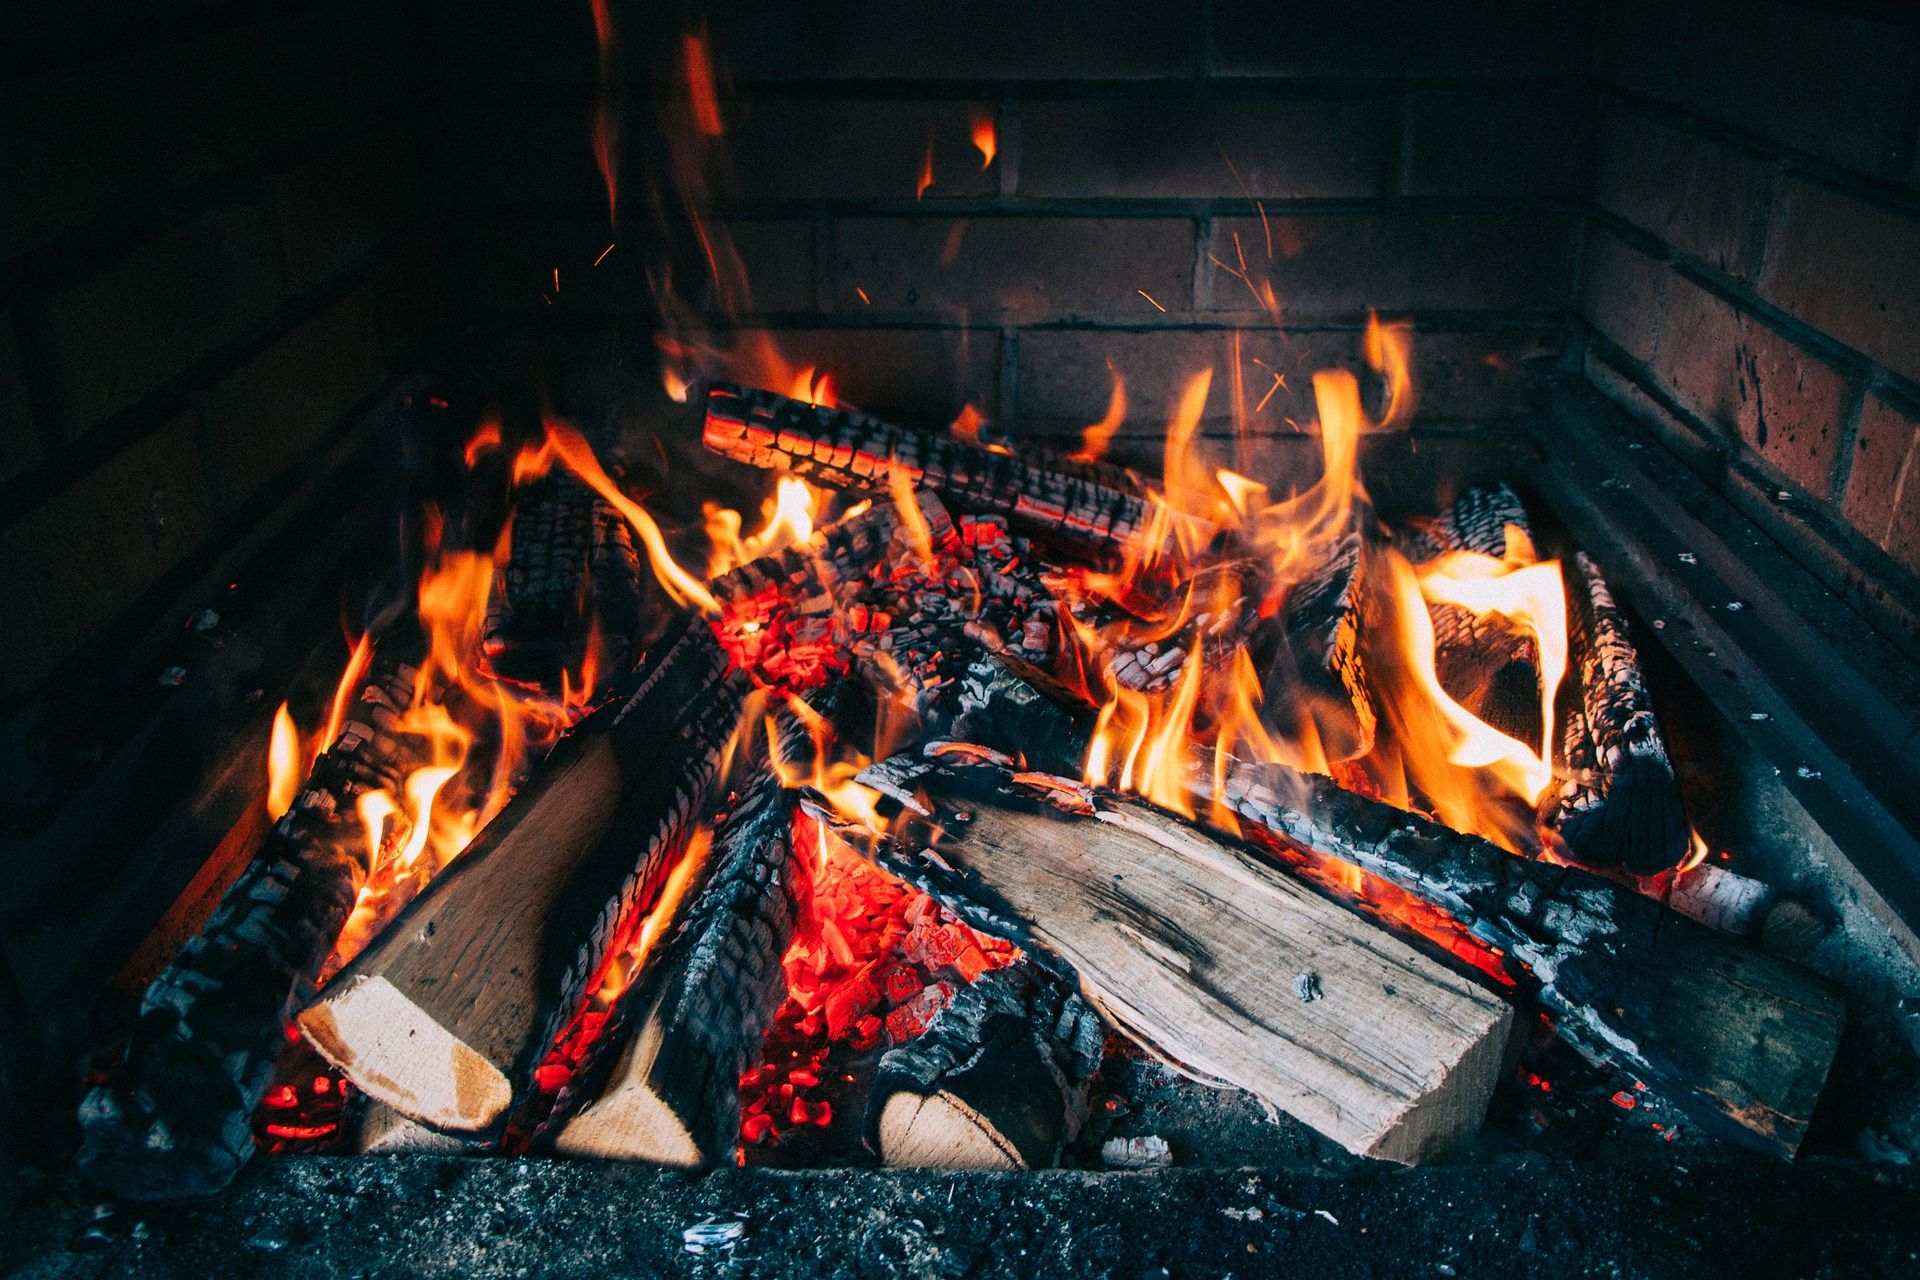 Ilustrasi amal kebaikan bisa rusak oleh perbuatan buruk seperti kayu bakar bisa habis dilahap api (Sumber : pixabay.com)